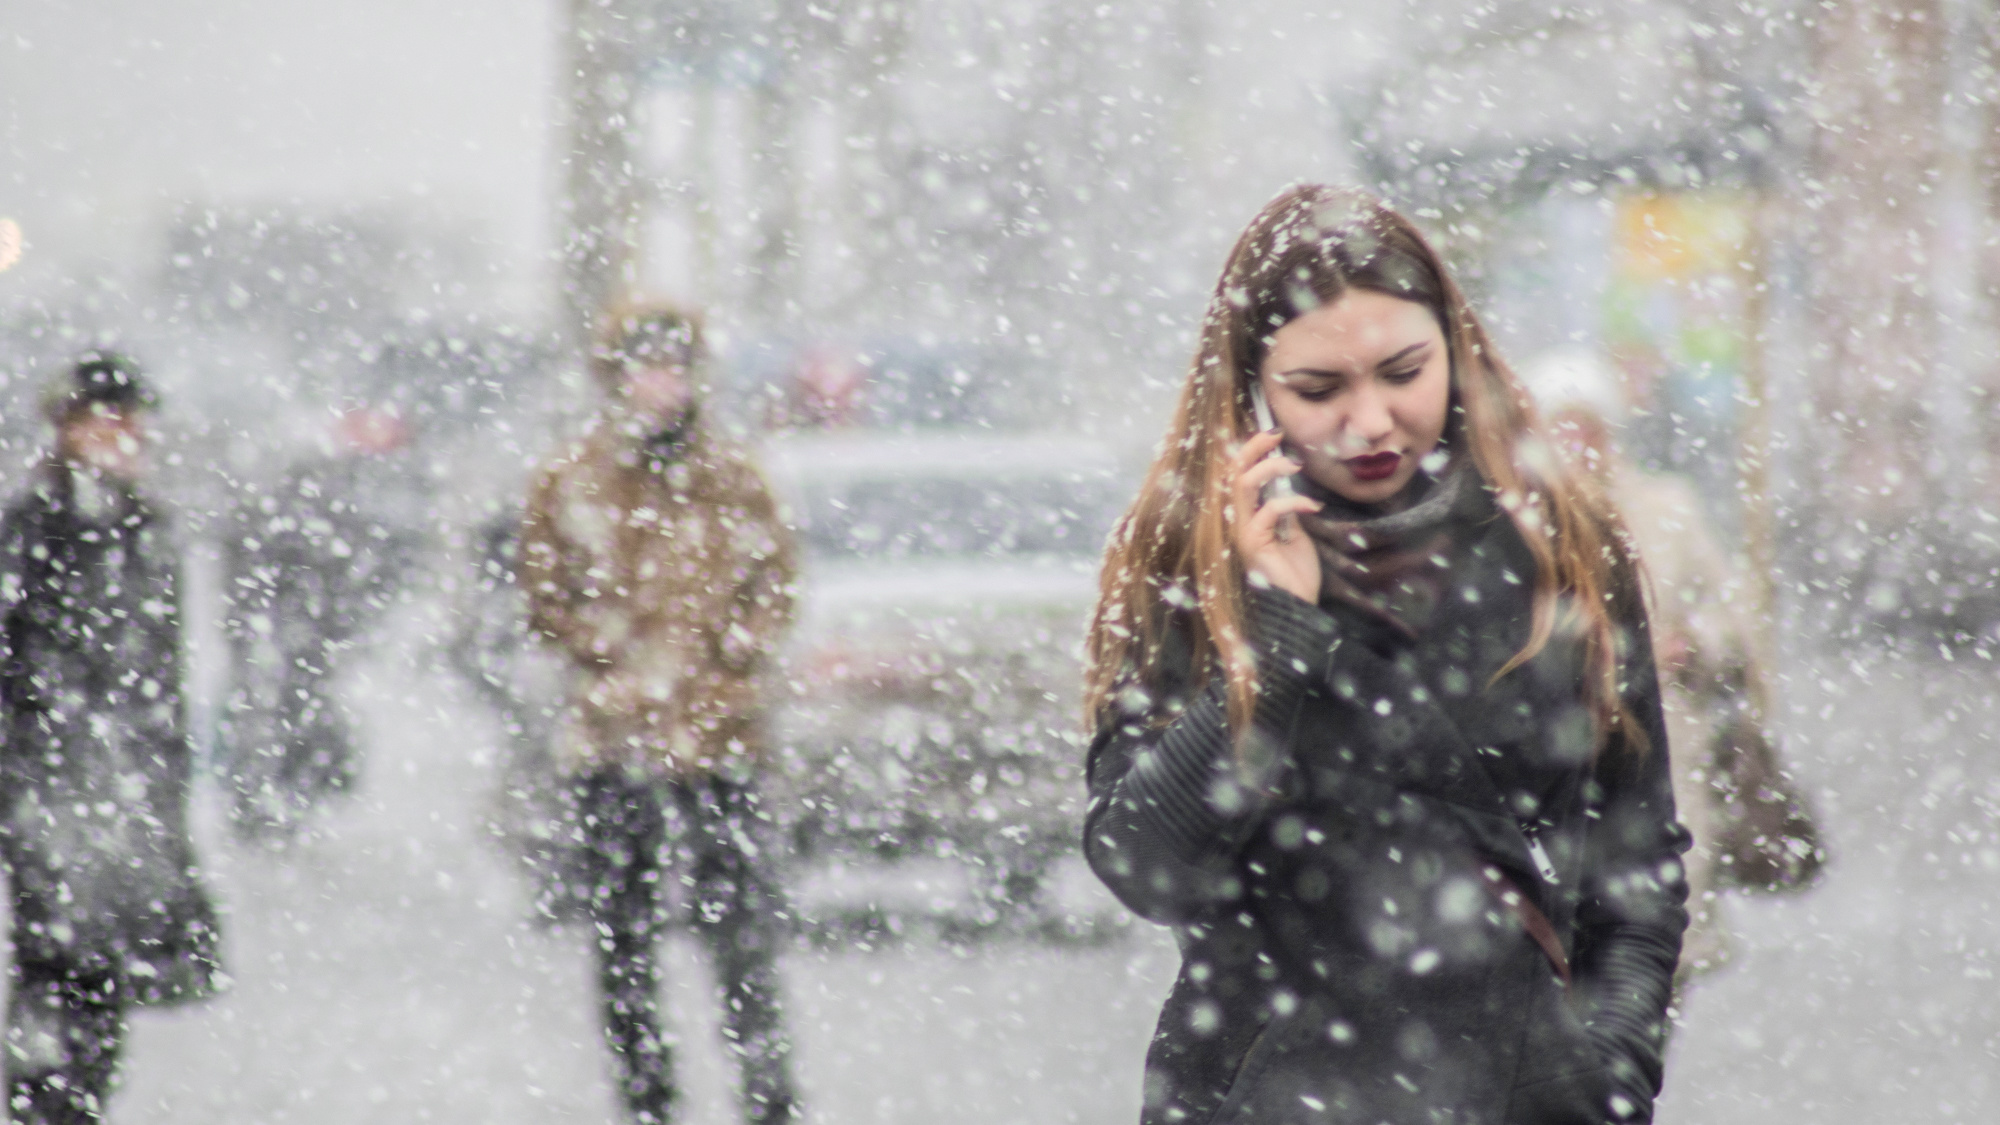 Минусы в погоде: рассказываем, когда в Челябинске выпадет первый снег и дадут отопление